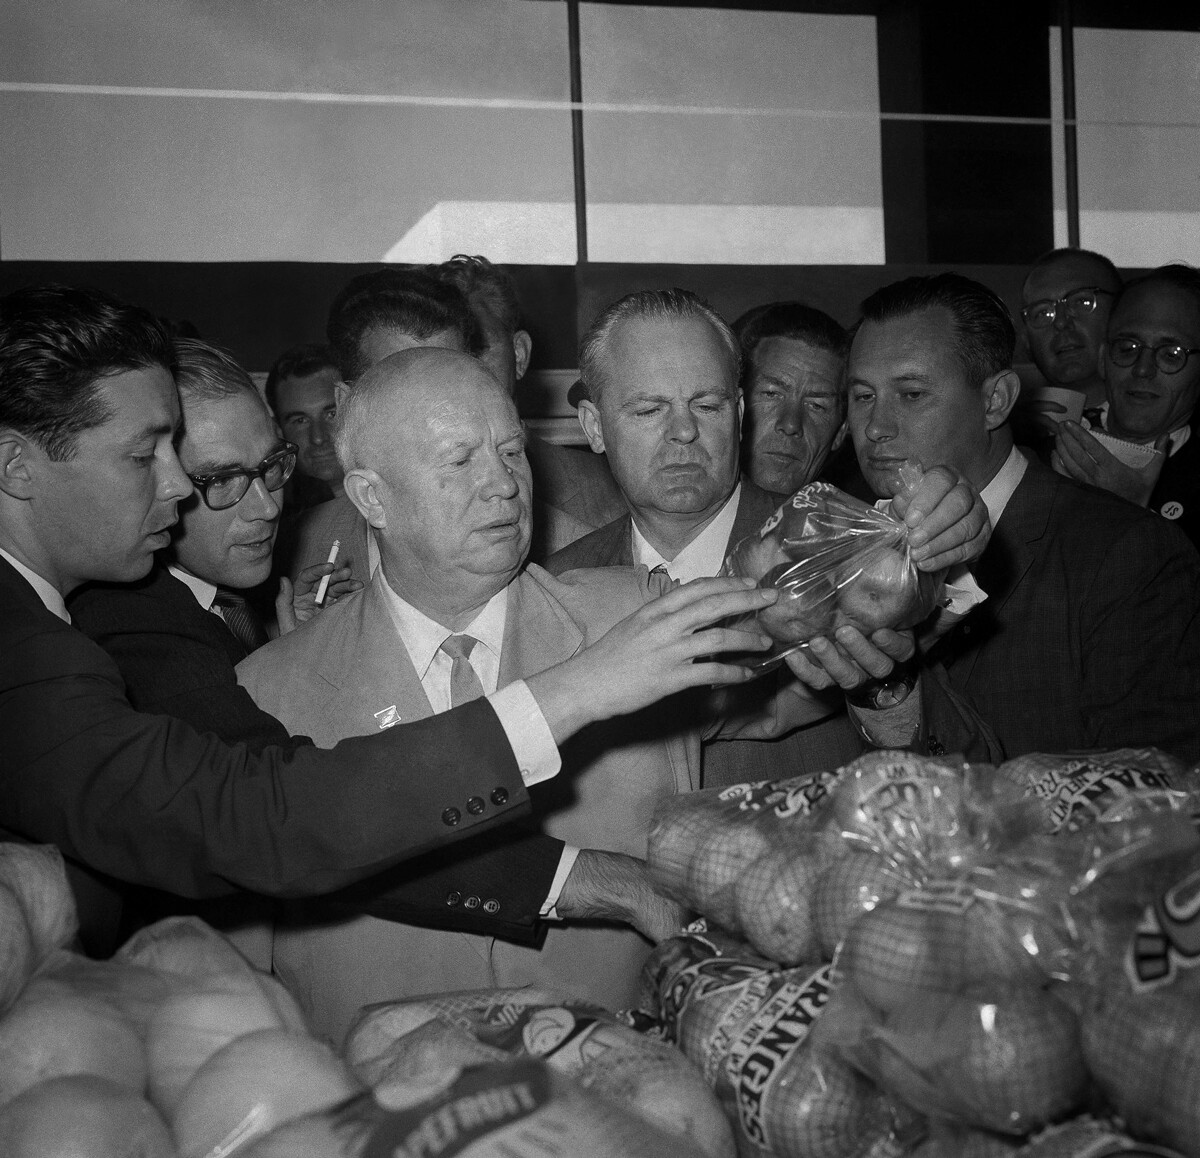 Sovjetski premijer Hruščov drži celofansku vrećicu punu jabuka u supermarketu u San Franciscu 21. rujna 1959. 